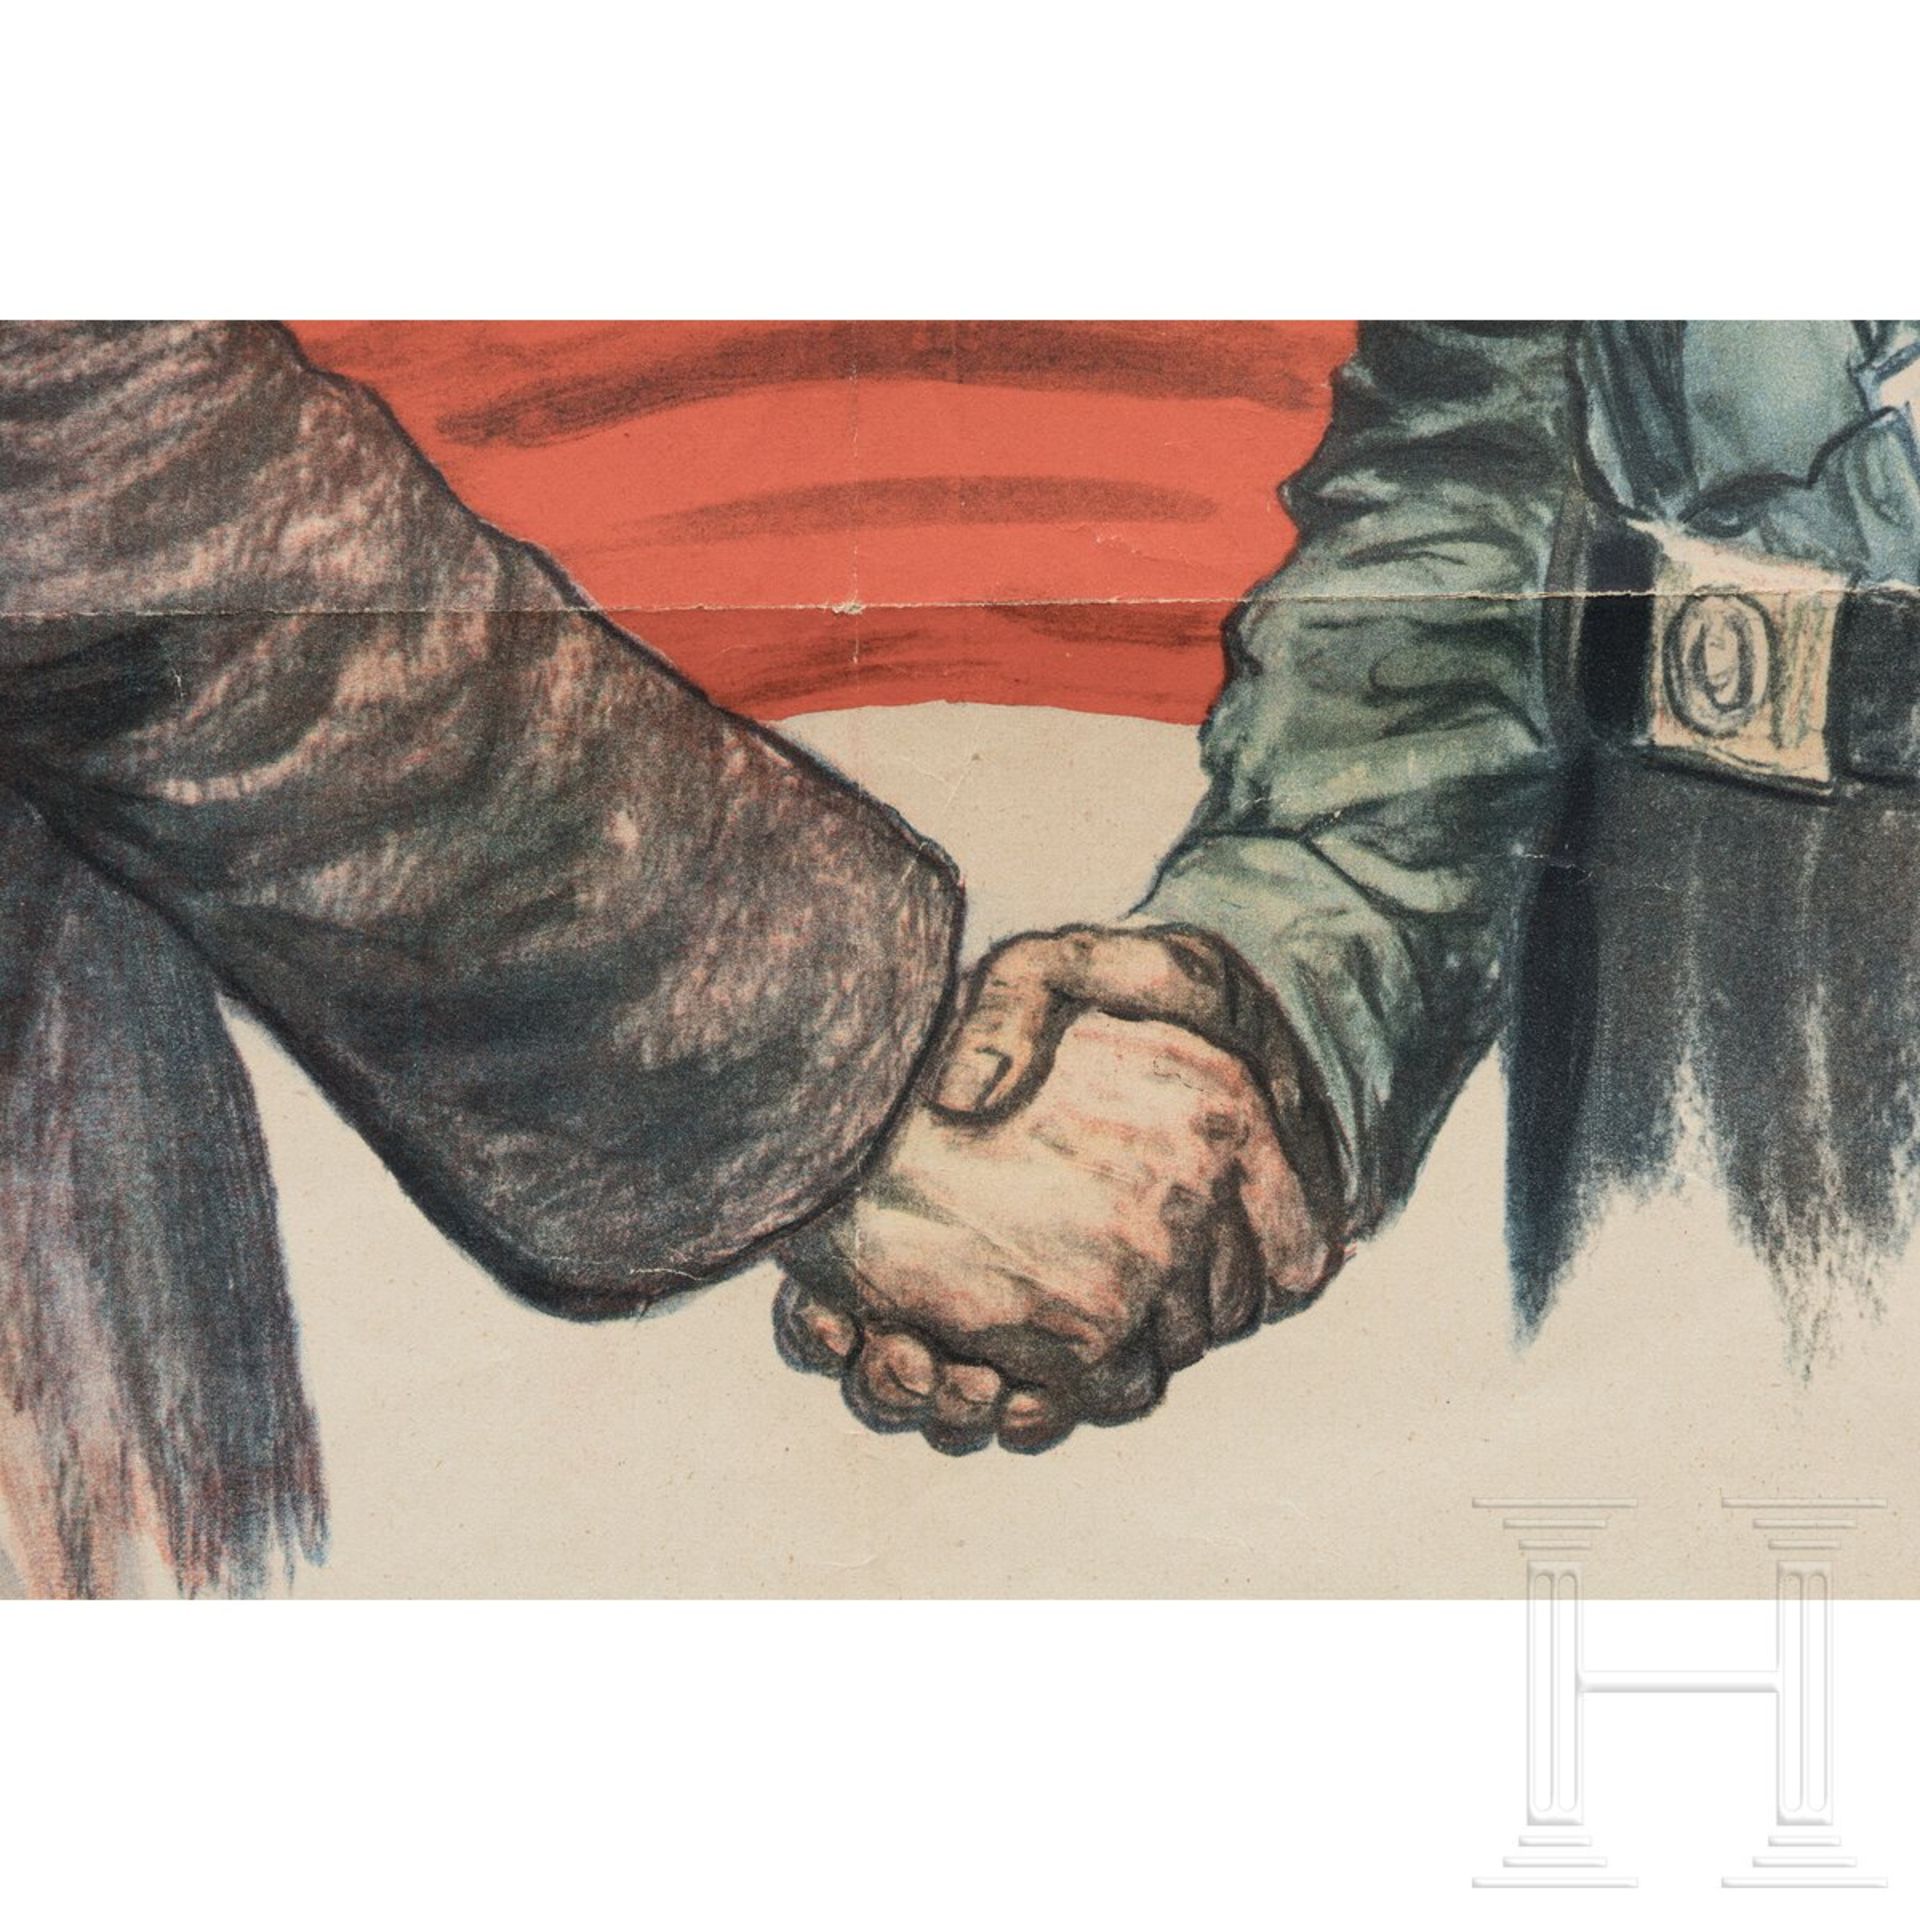 Wahlplakat "Handeln - nicht hetzen, wir gehören zusammen!" der Deutschnationalen Volkspartei, 1932 - Image 3 of 6